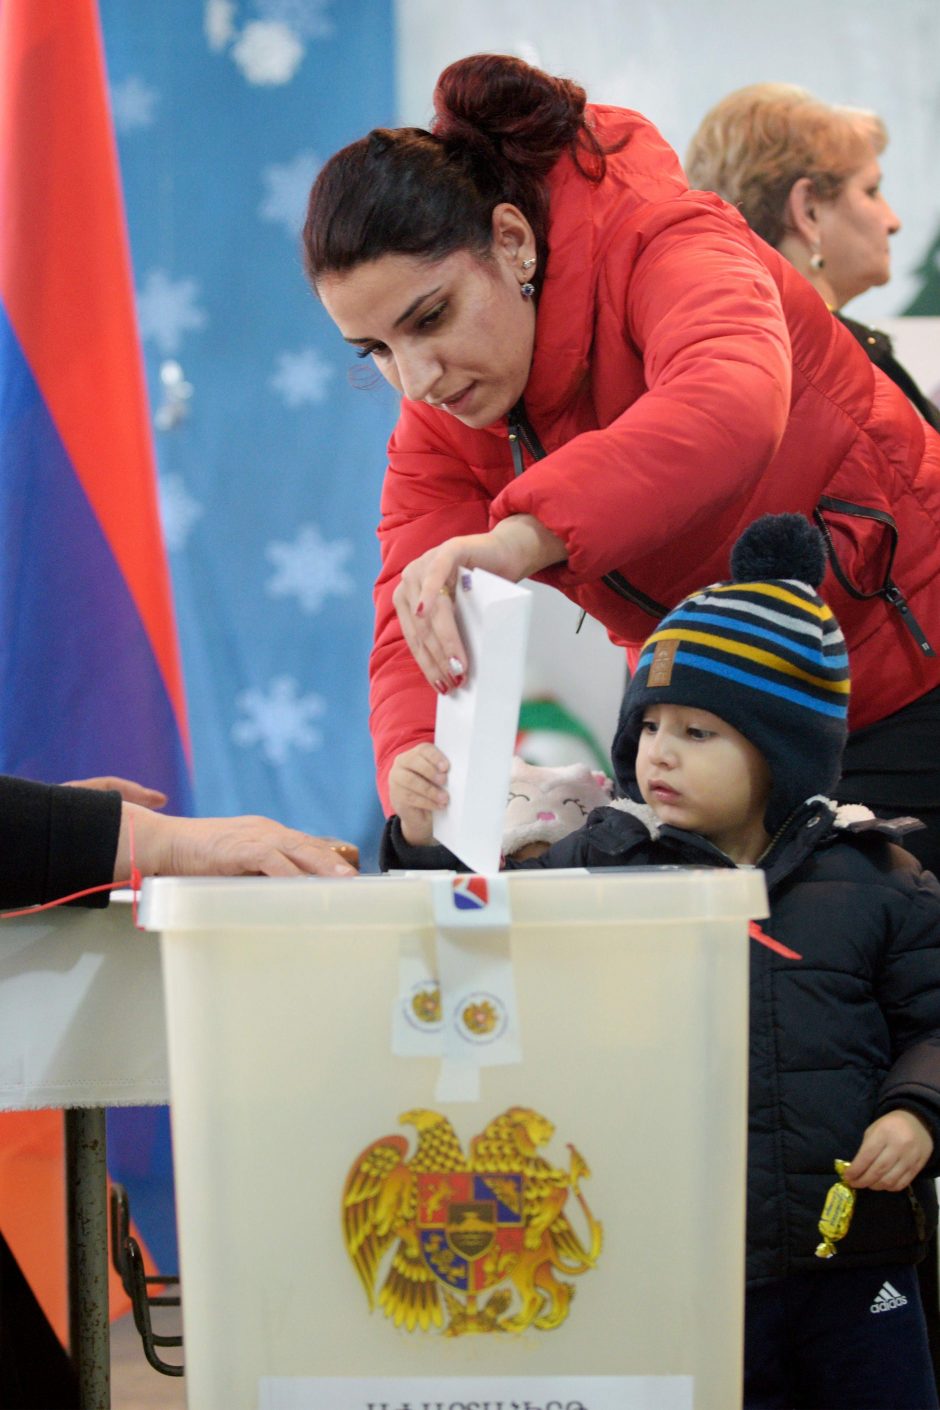 Pirmieji oficialūs rinkimų Armėnijoje rezultatai rodo N. Pašiniano bloko pergalę